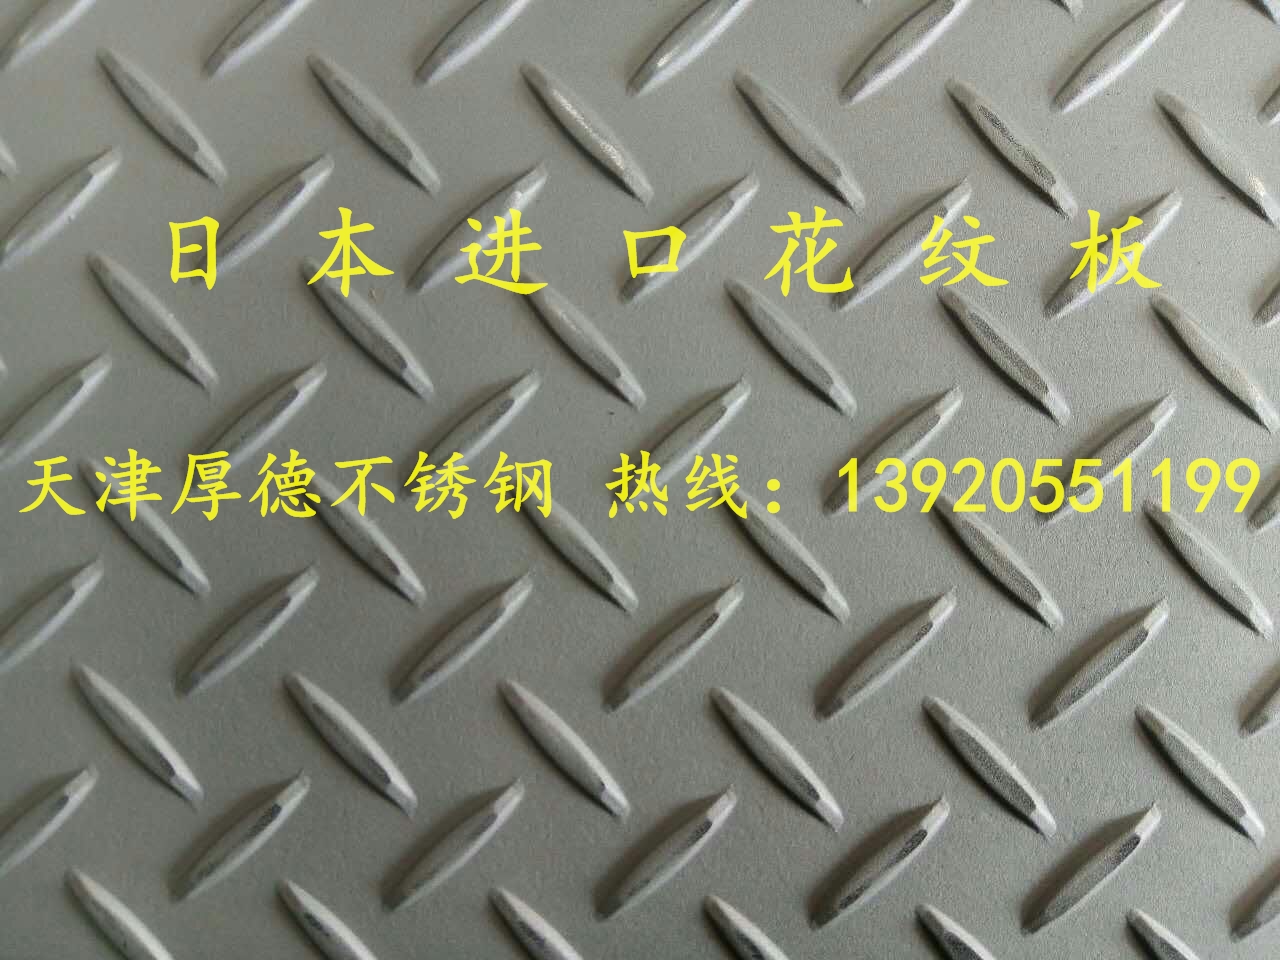 304进口不锈钢花纹板多少钱 天津304进口不锈钢花纹板哪里有 304进口花纹板现货